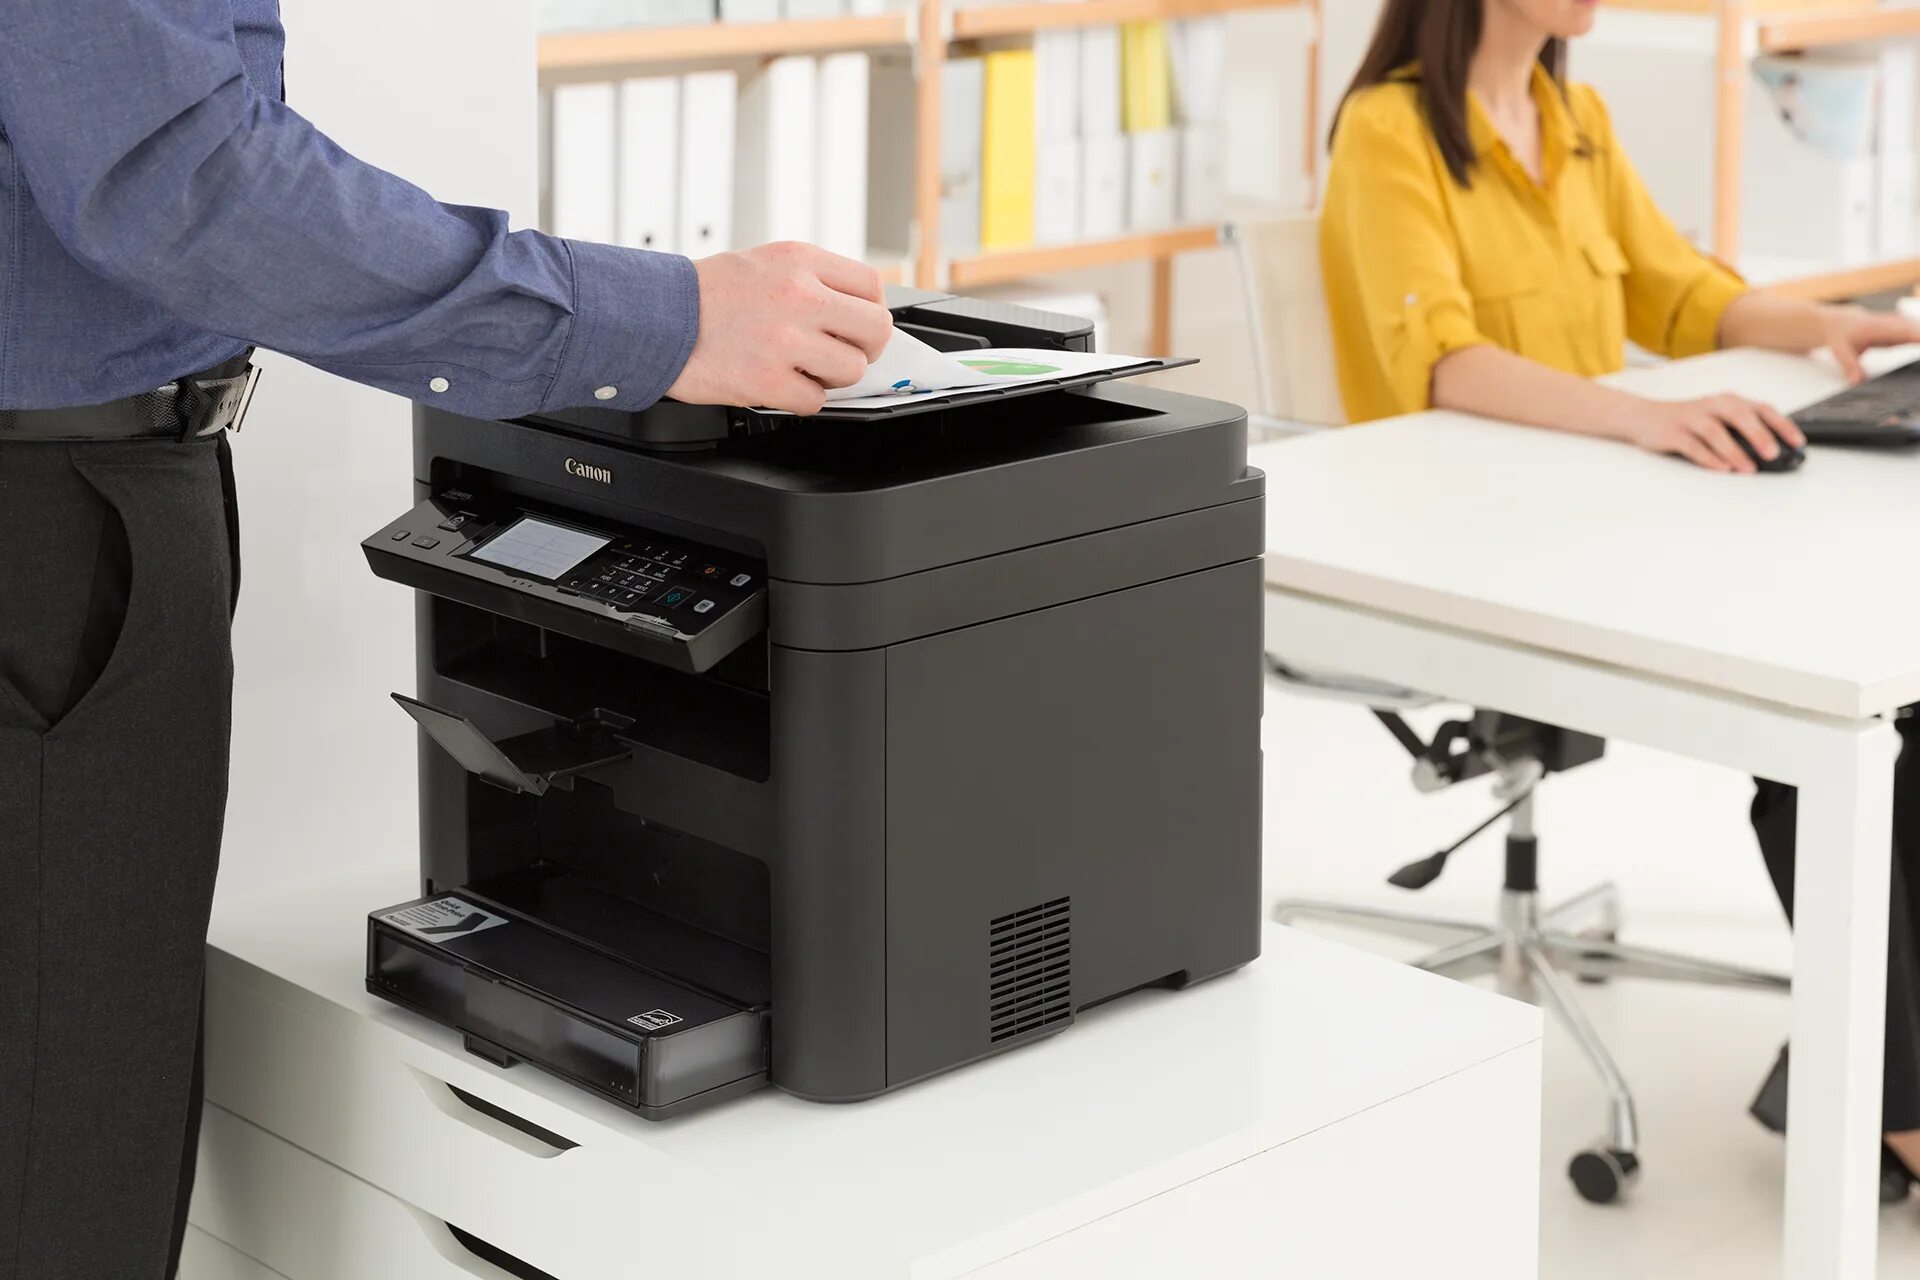 Принтер в офисе. Принтер МФУ для офиса. Копировальные аппараты для офиса. Лазерный принтер в офисе. Копир для офиса